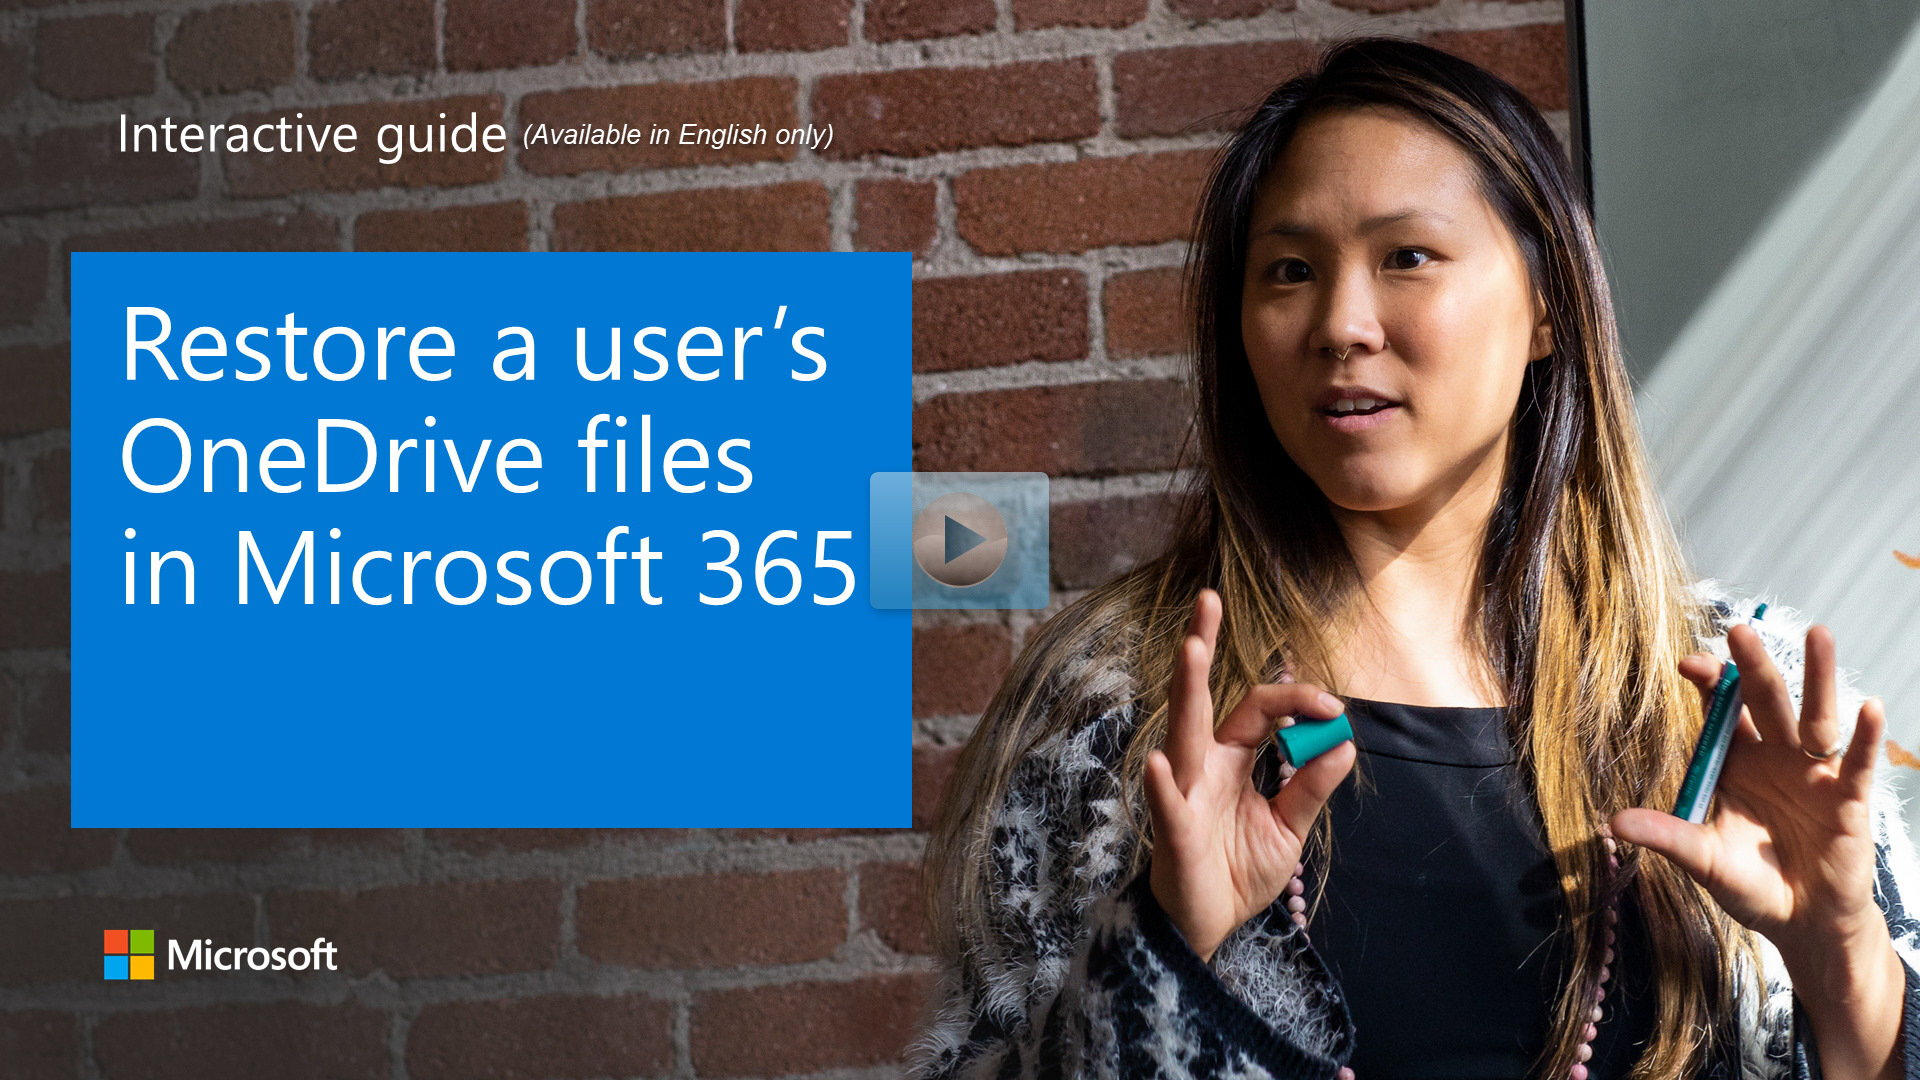 Restore a user's OneDrive files in Microsoft 365